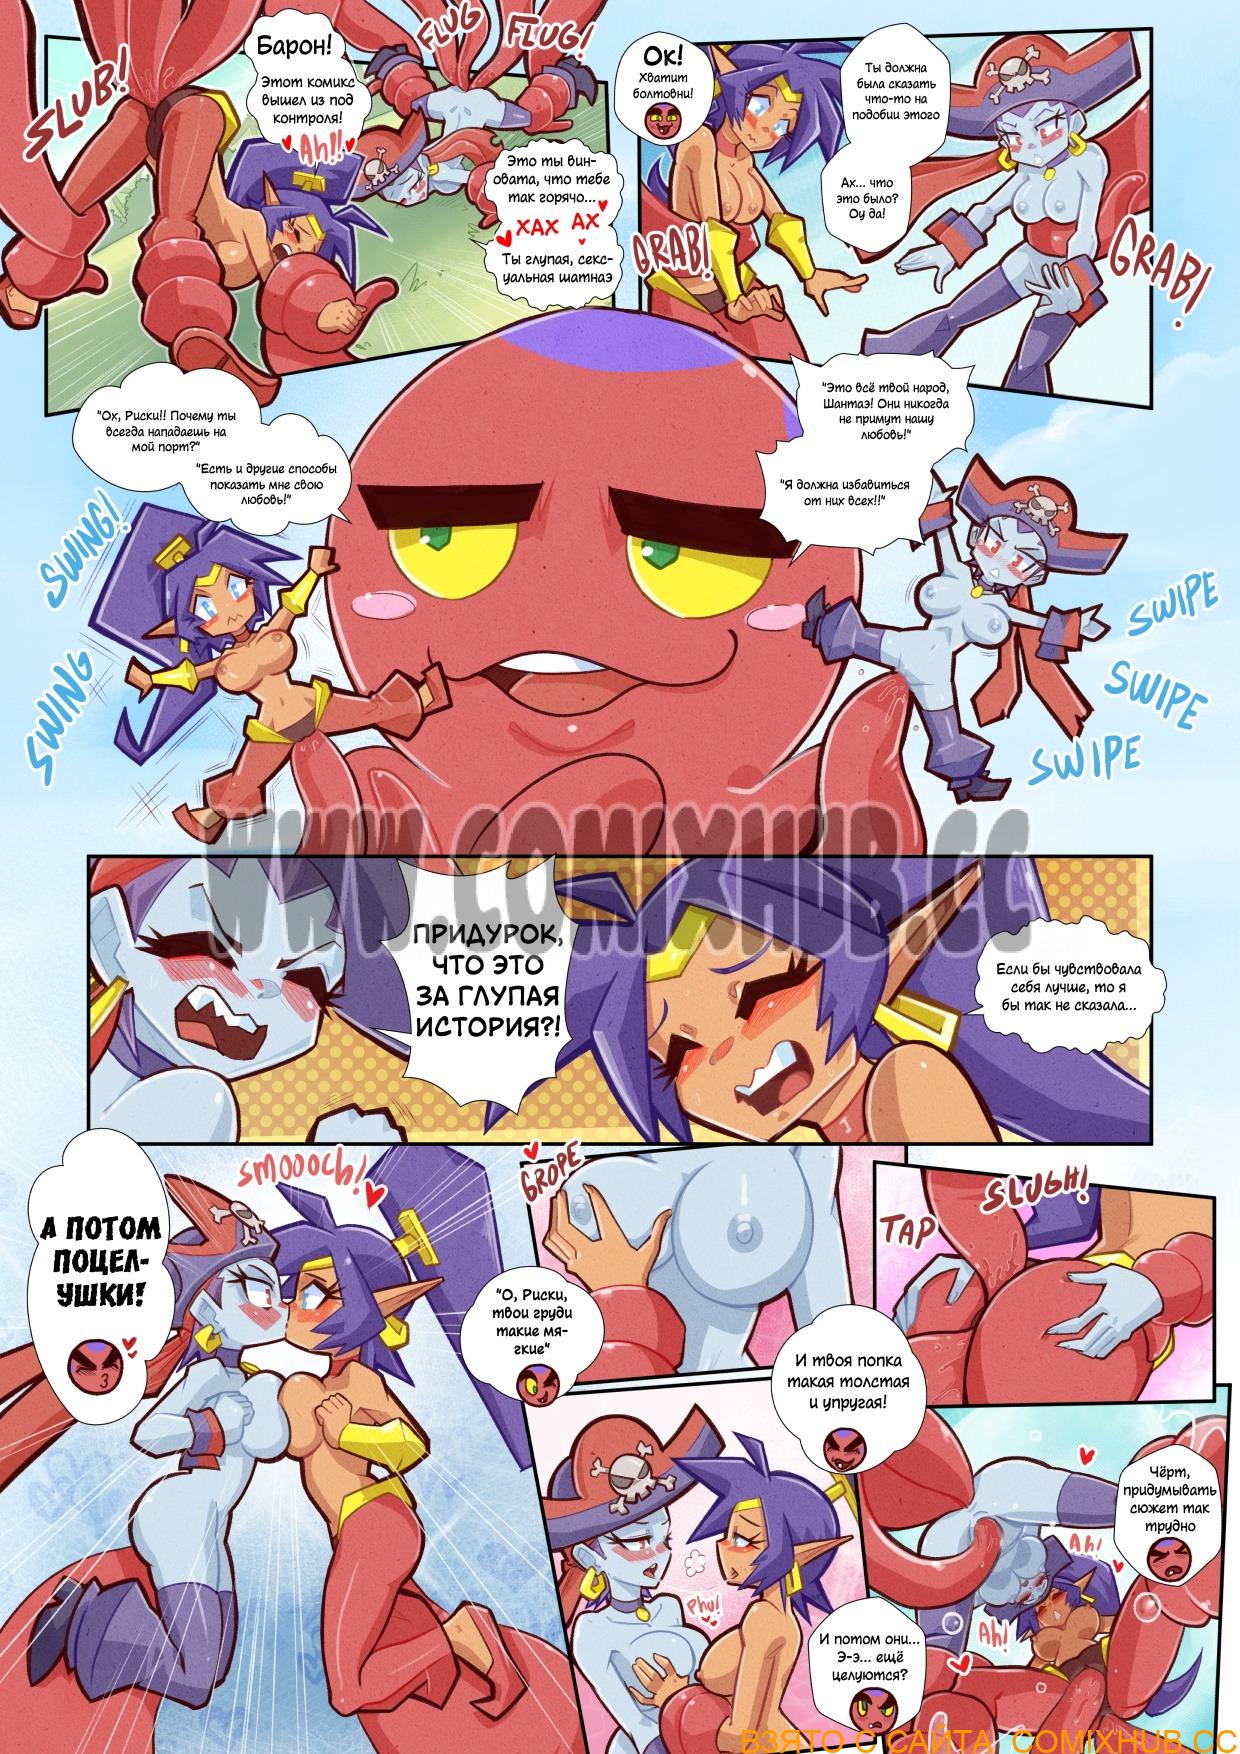 Shantae & Risky - Полуодетые Героини Порно комиксы, Групповой секс, Лесбиянки, Минет, Монстры